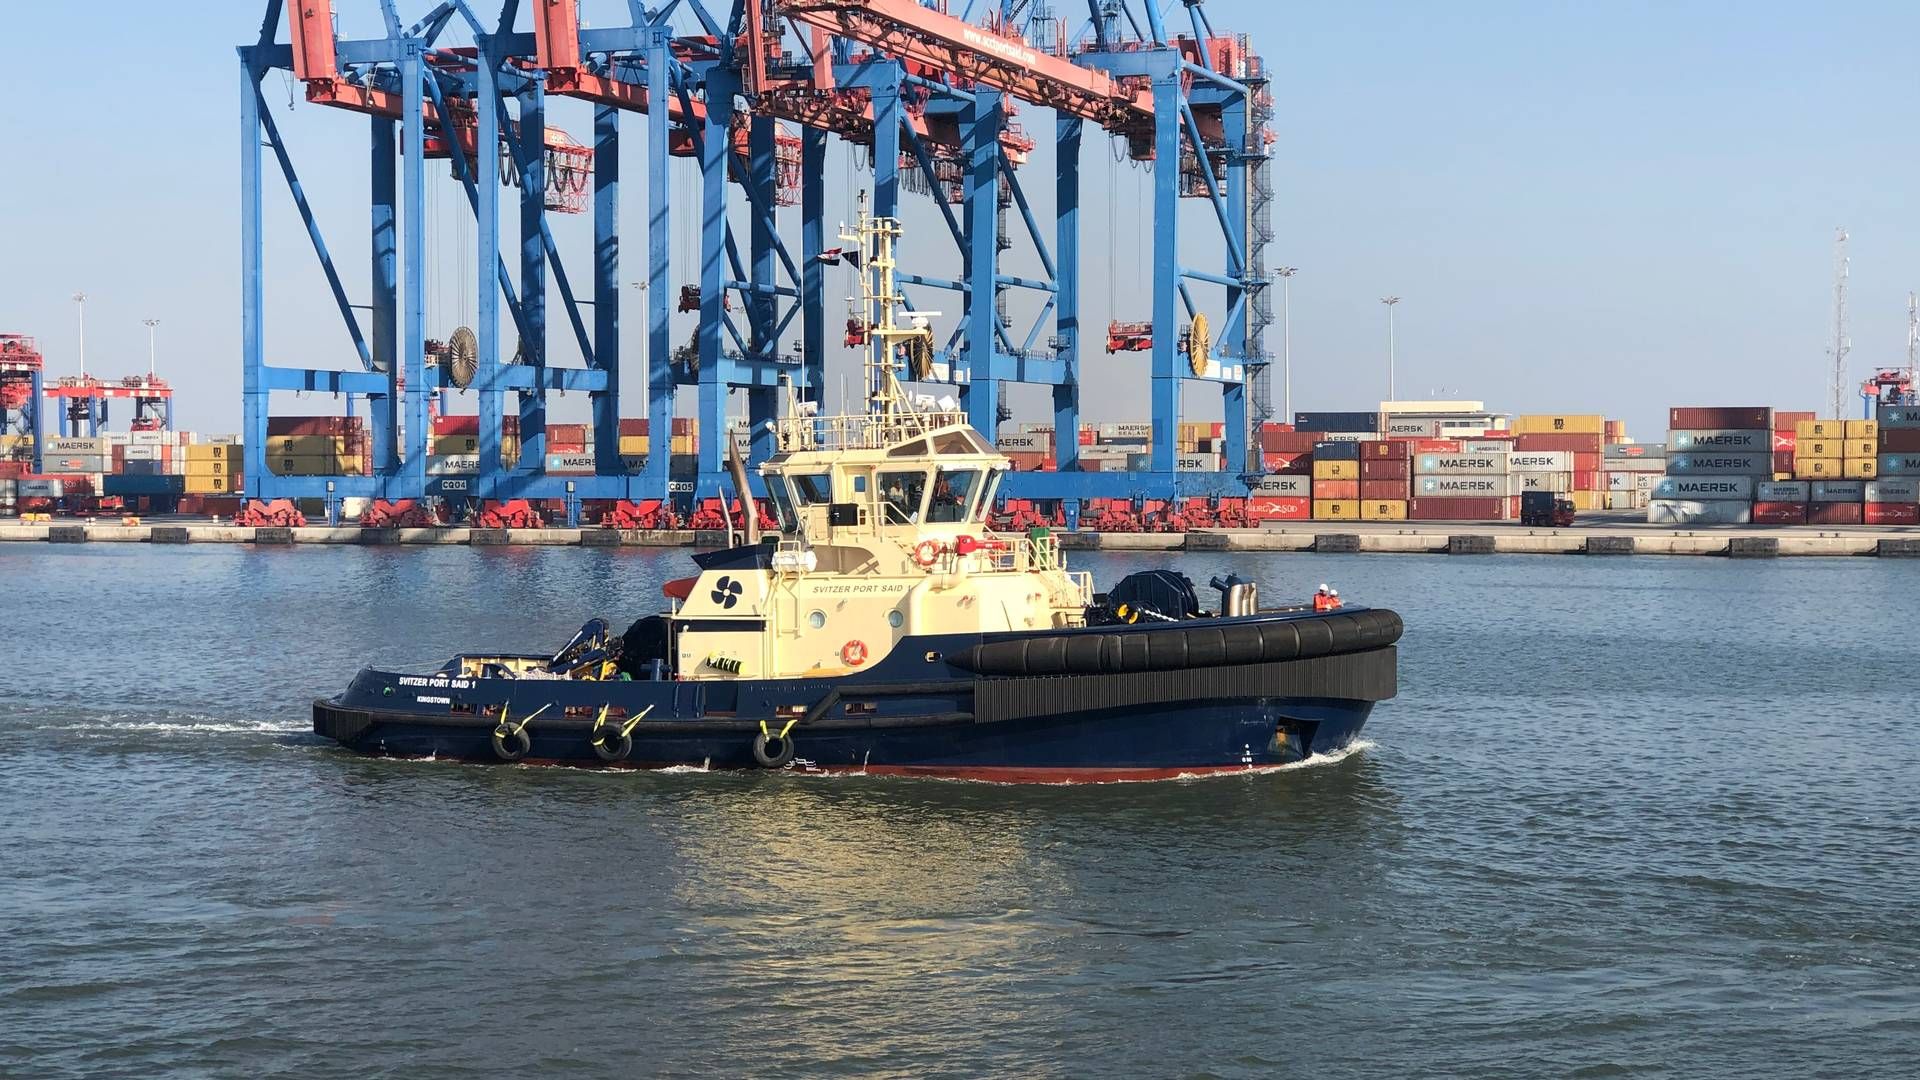 Slæbebådsrederiet Svitzer kan sammen med Maersk Supply Service, Maersk Container Industry og Maersk Training være på vej ud af Maersk-koncernen. | Foto: Pr/svitzer